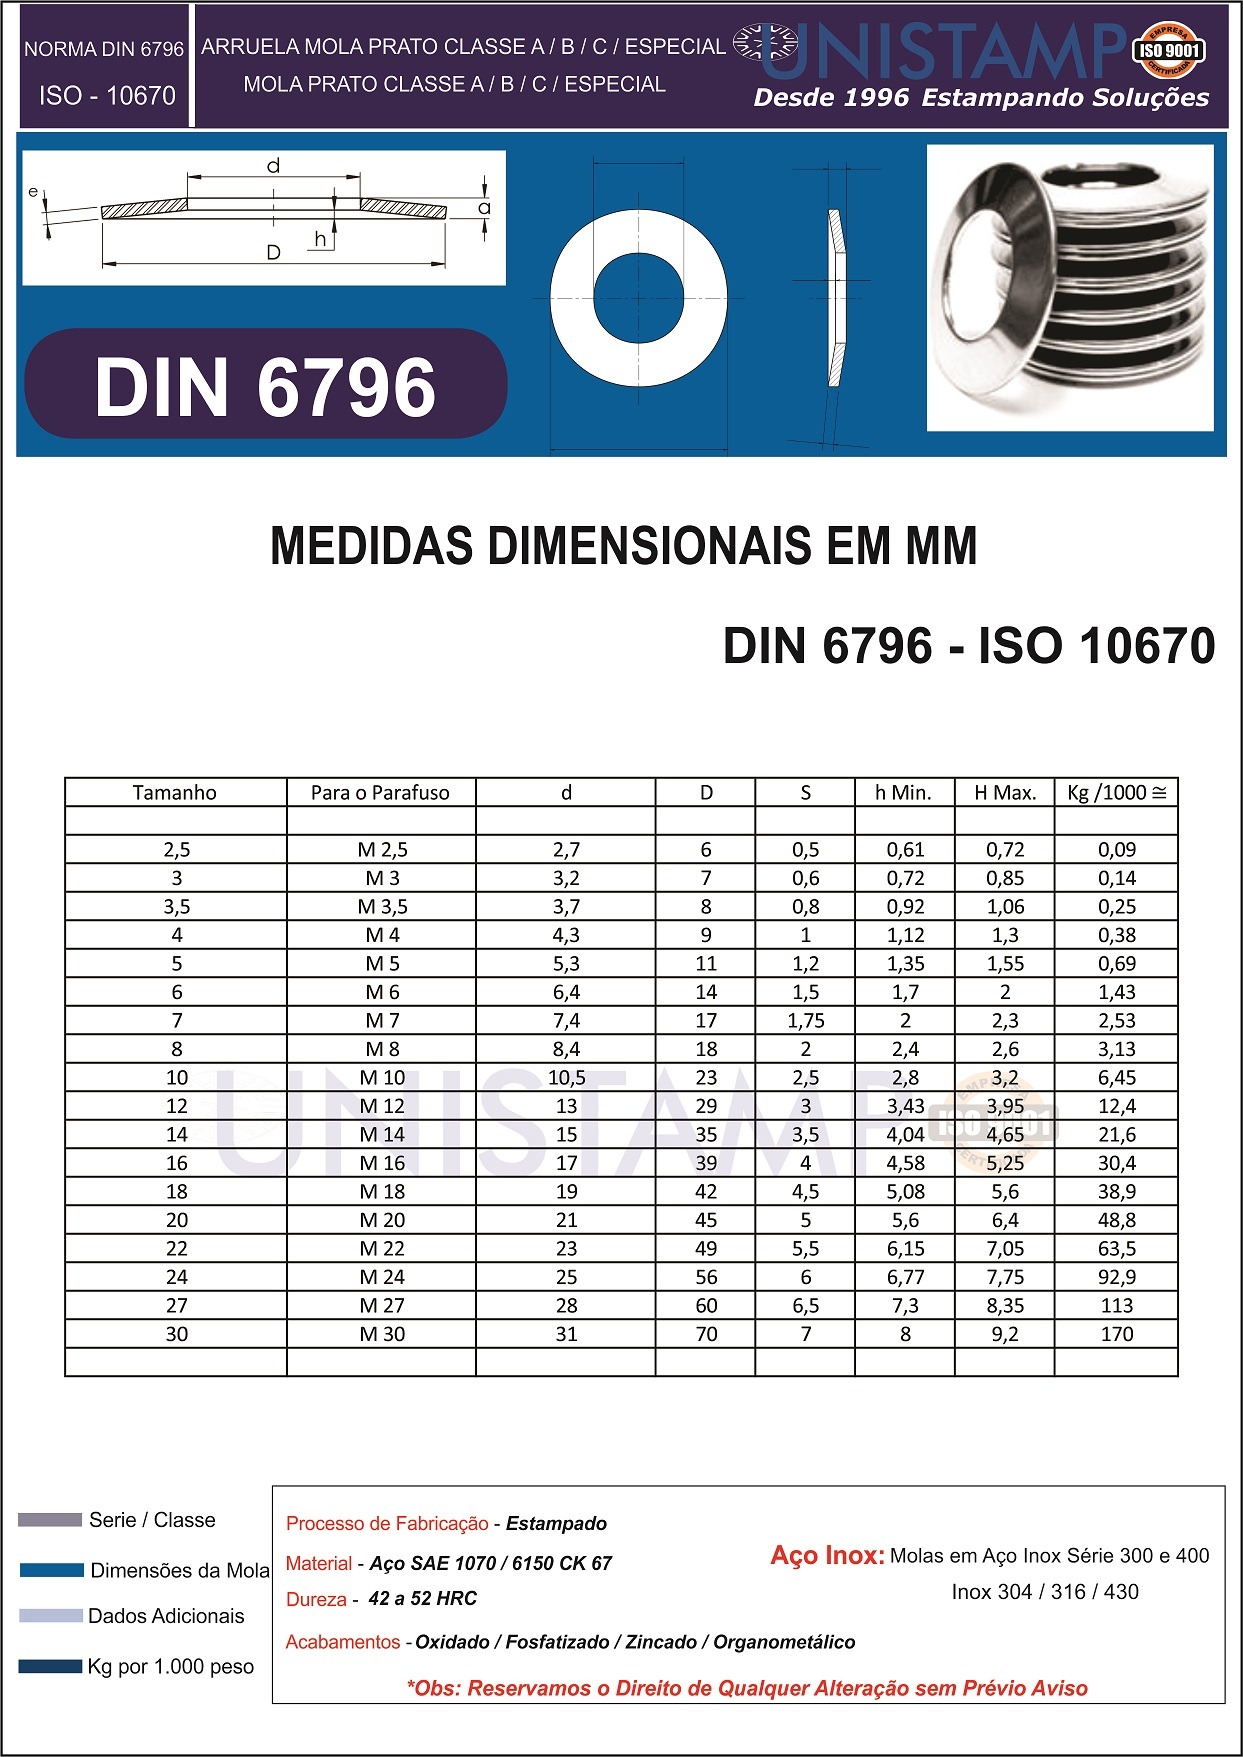 DIN 6796 Catalogo Dimensional Mola Prato